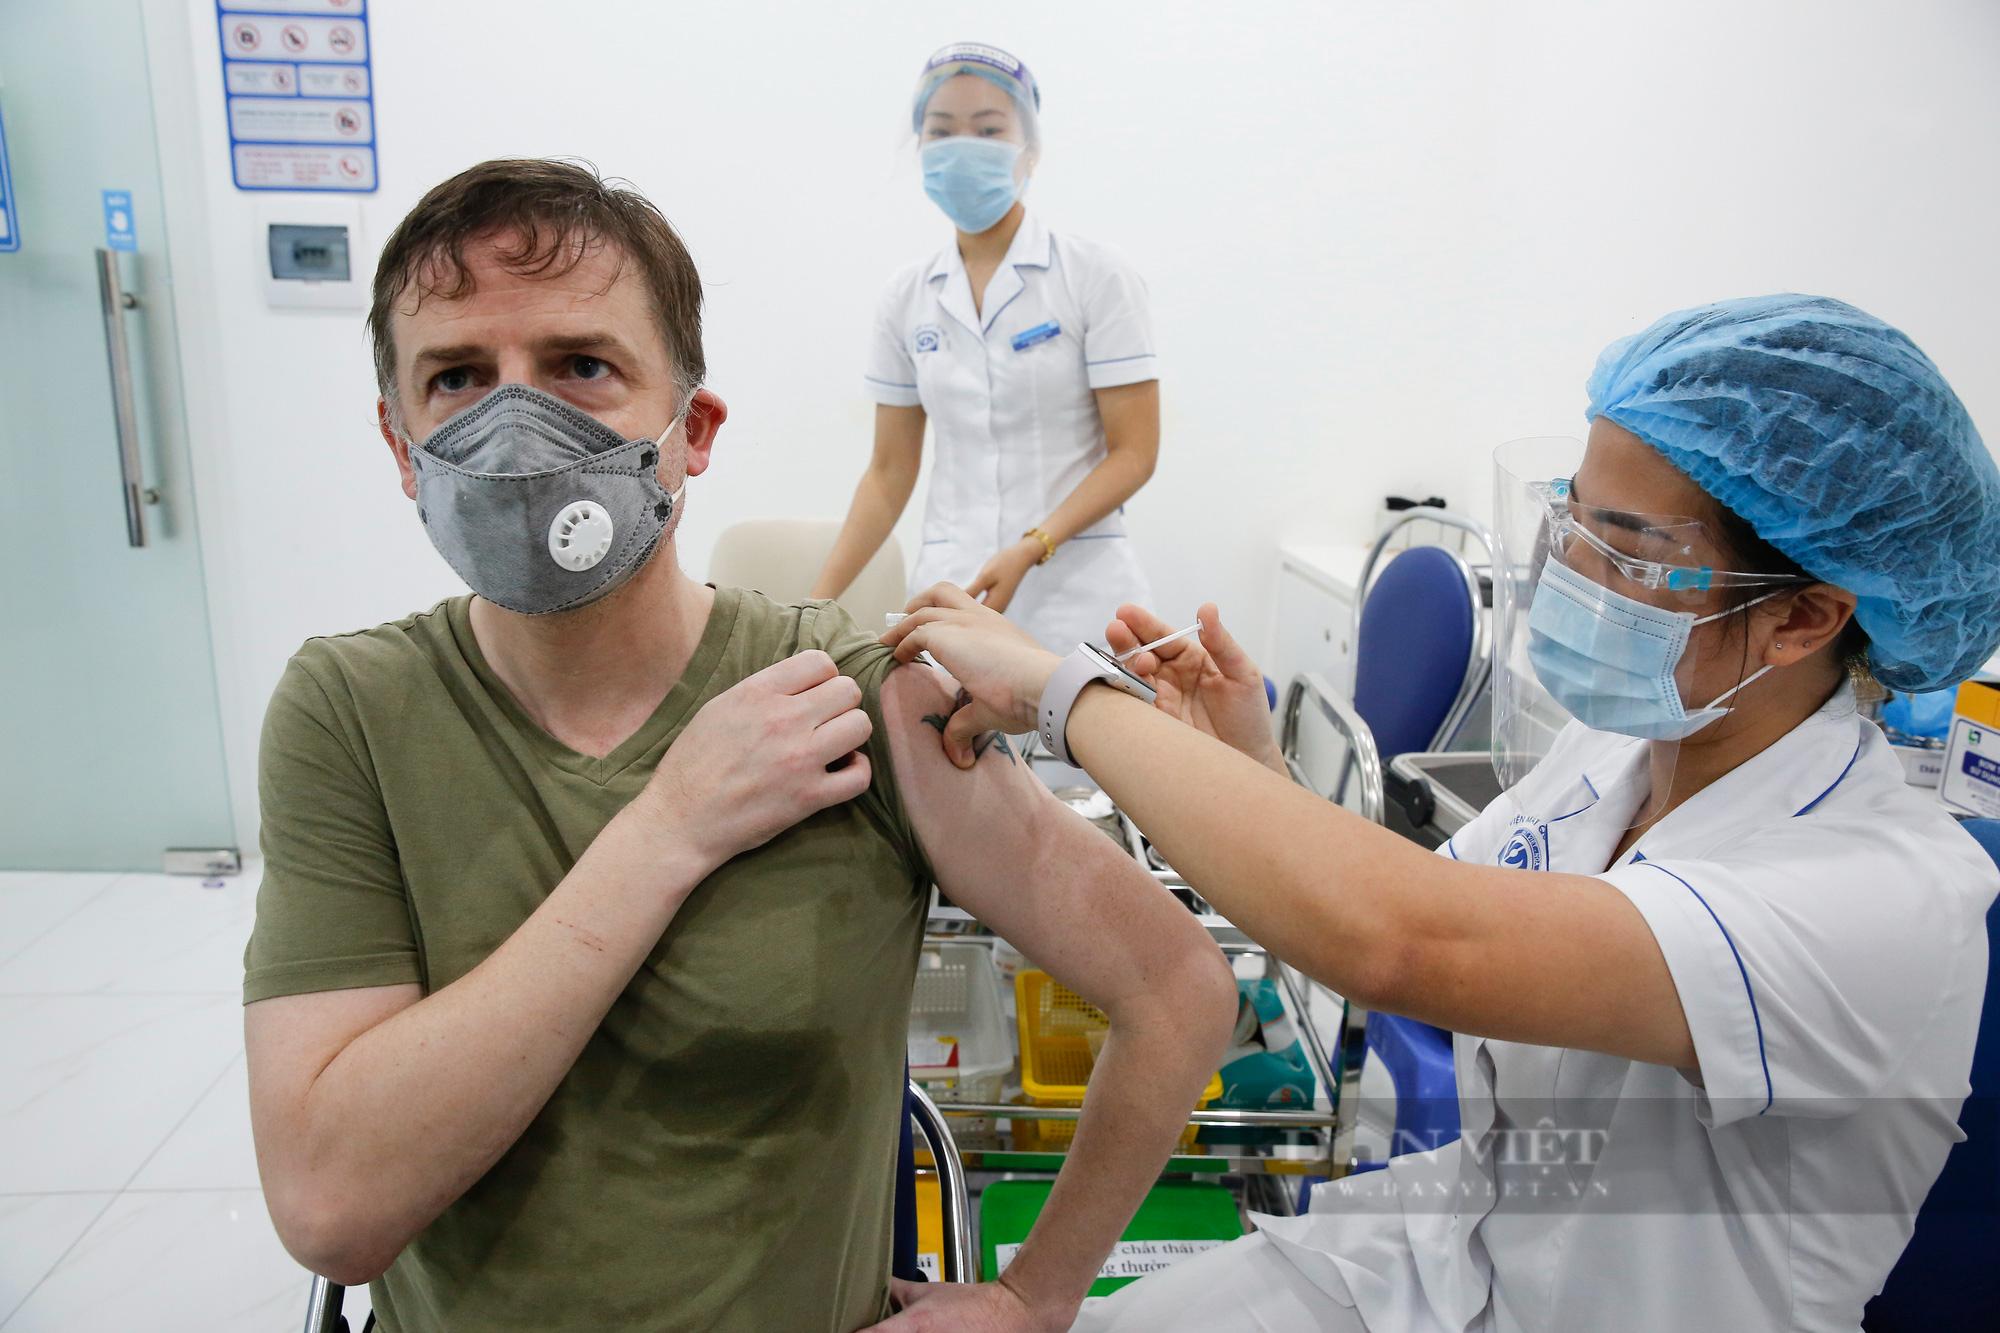 Tiêm vaccine Covid-19 cho hàng trăm người nước ngoài mỗi ngày tại Hà Nội - Ảnh 11.